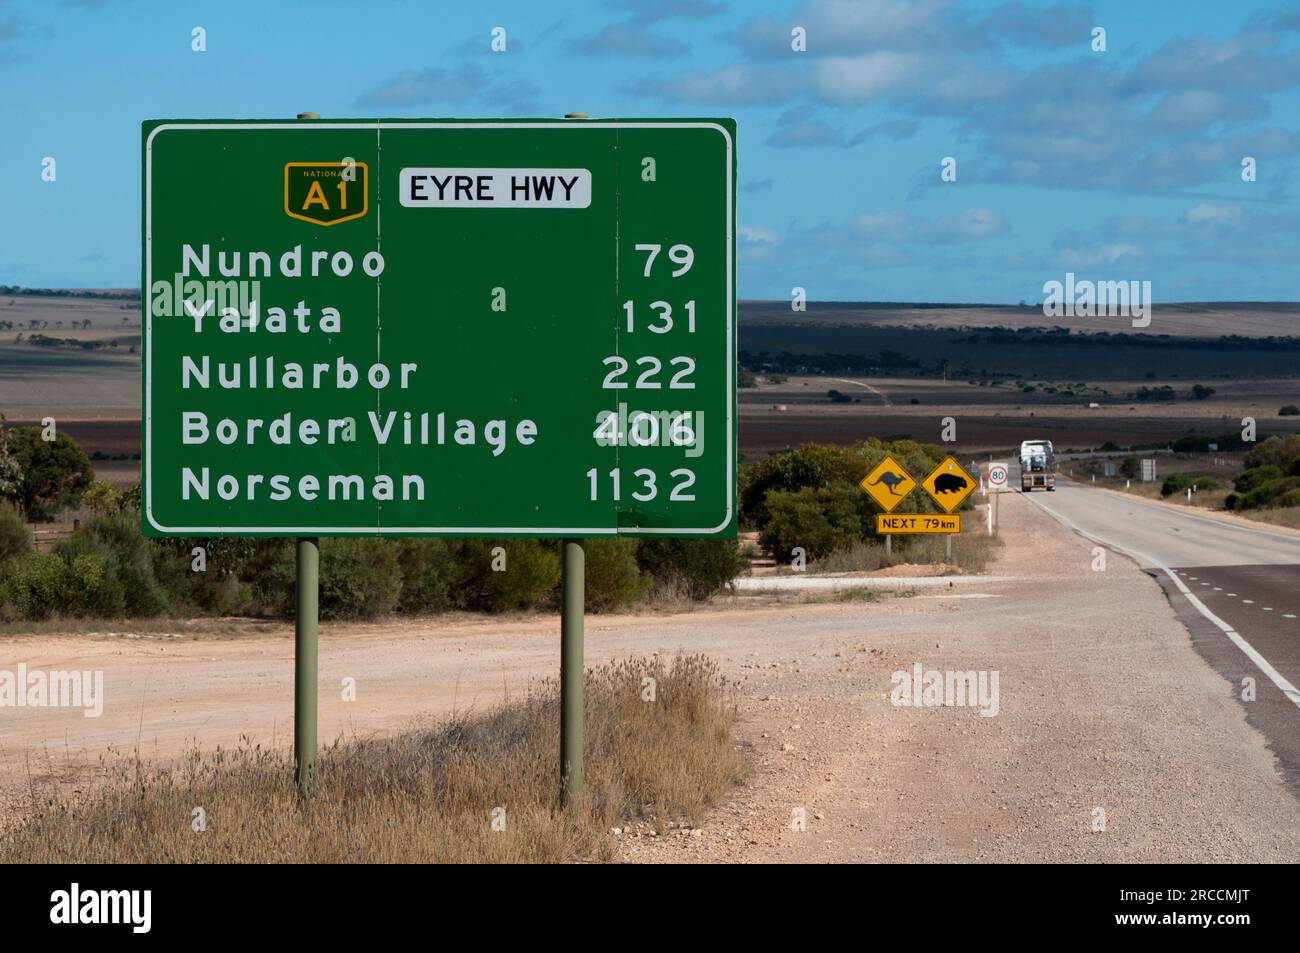 Panneaux indiquant les distances au début de l'Eyre Highway A1 qui traverse la plaine de Nullarbor en Australie Banque D'Images